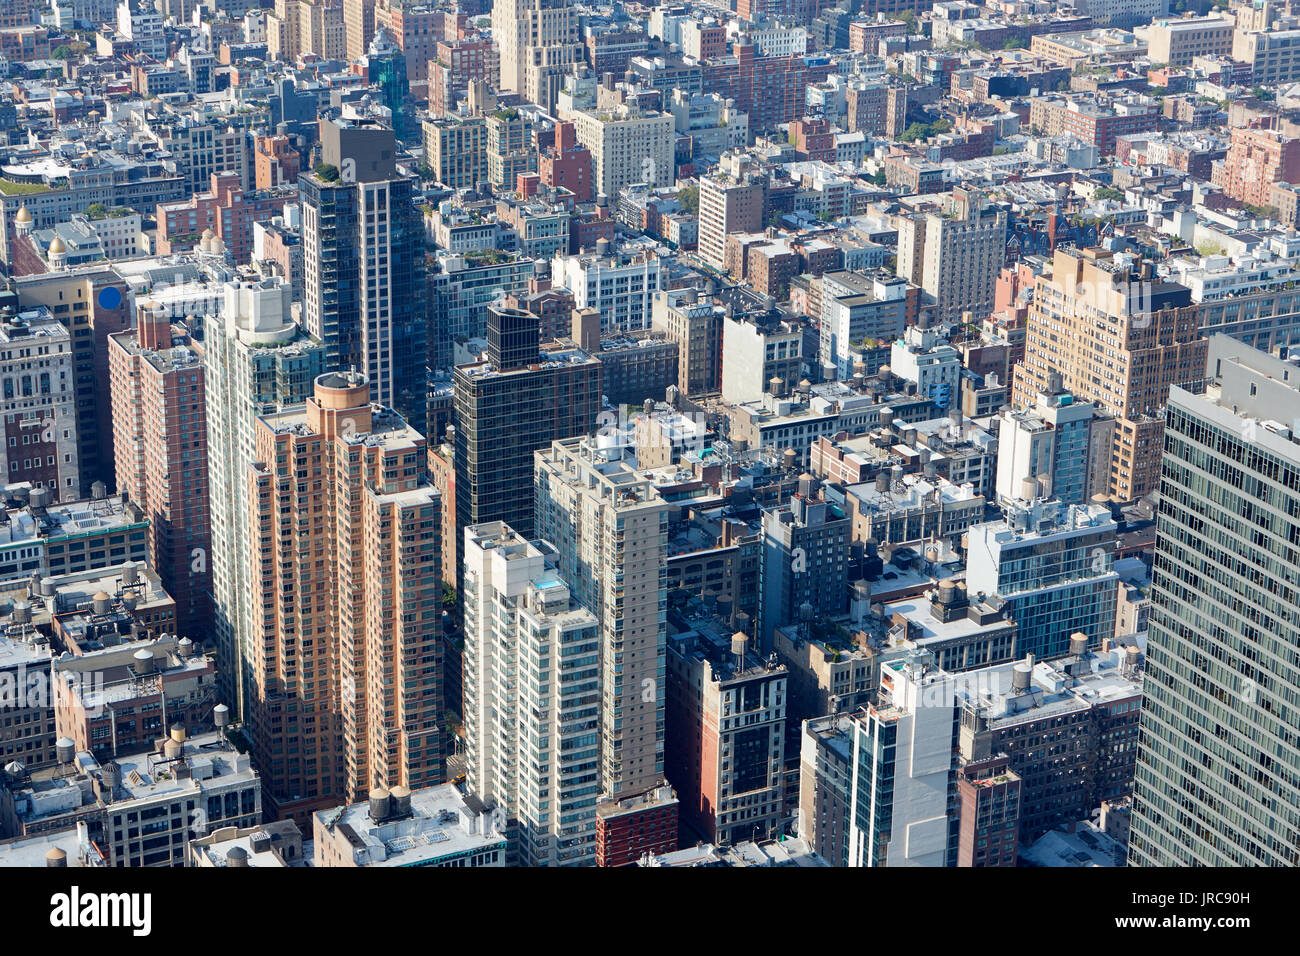 New York City Manhattan vue aérienne avec des gratte-ciel et bâtiments historique Banque D'Images